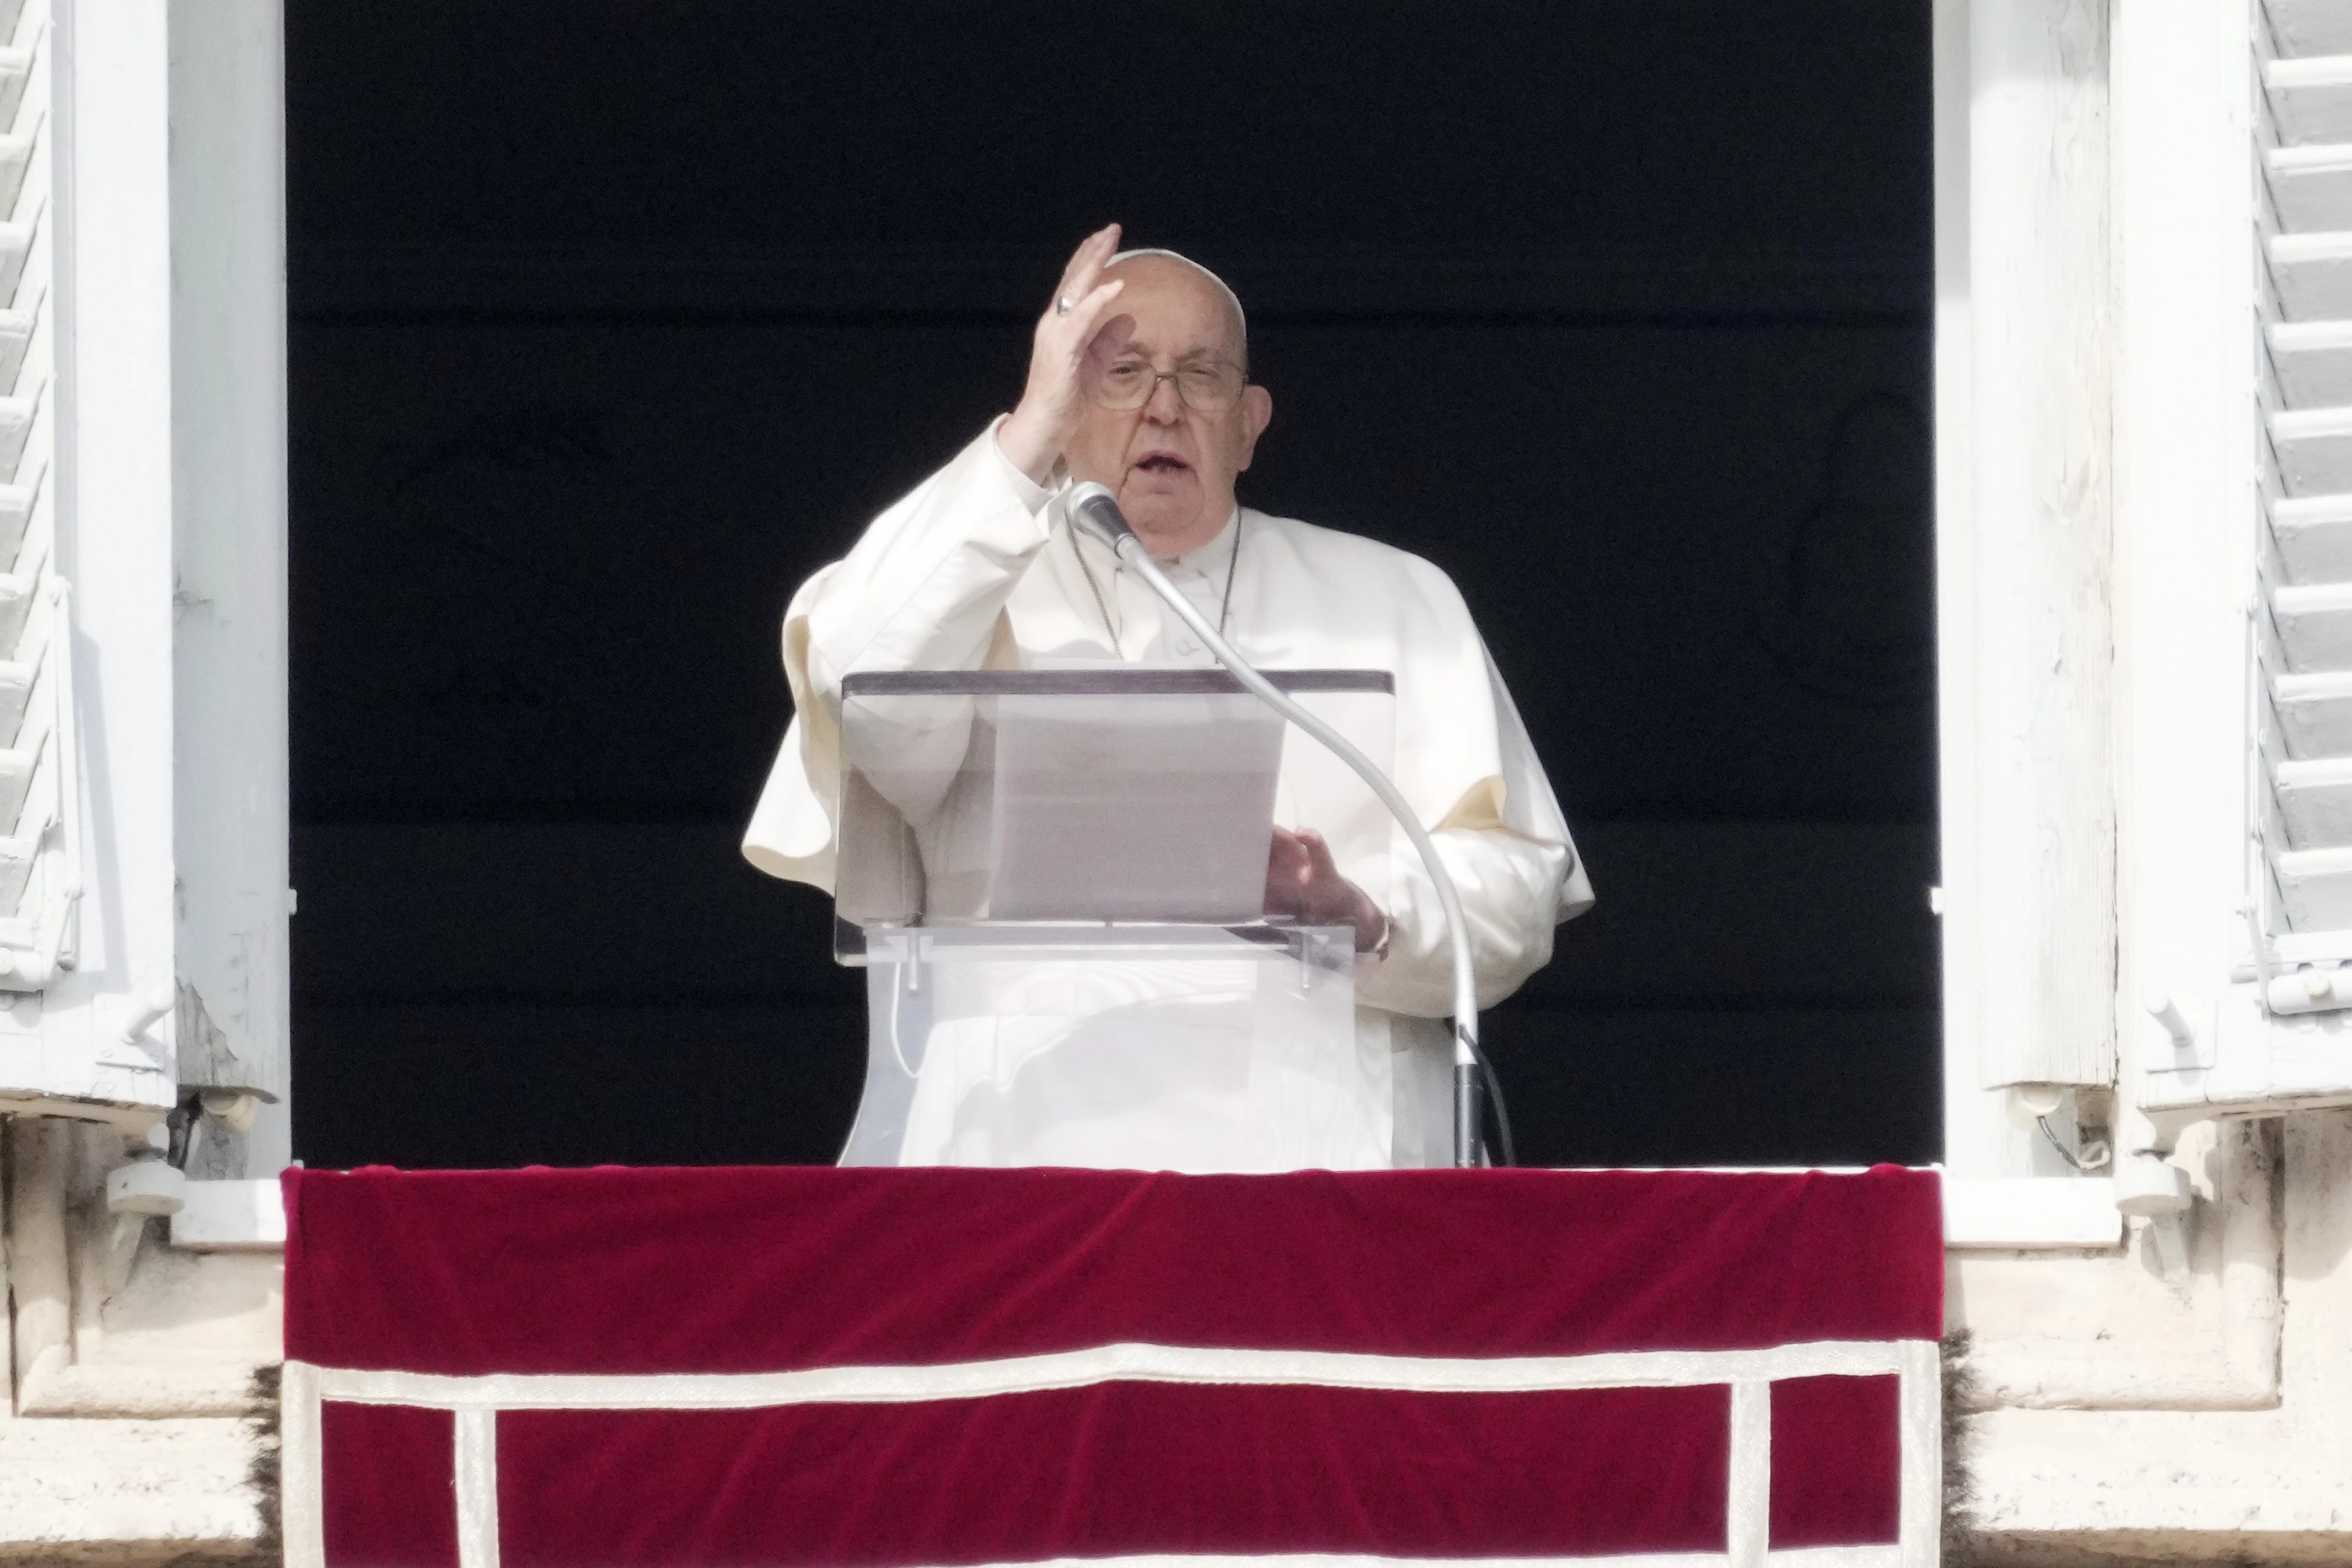 Nuevo contratiempo de salud para el Papa: tiene bronquitis y vuelve a pedir que lean su discurso